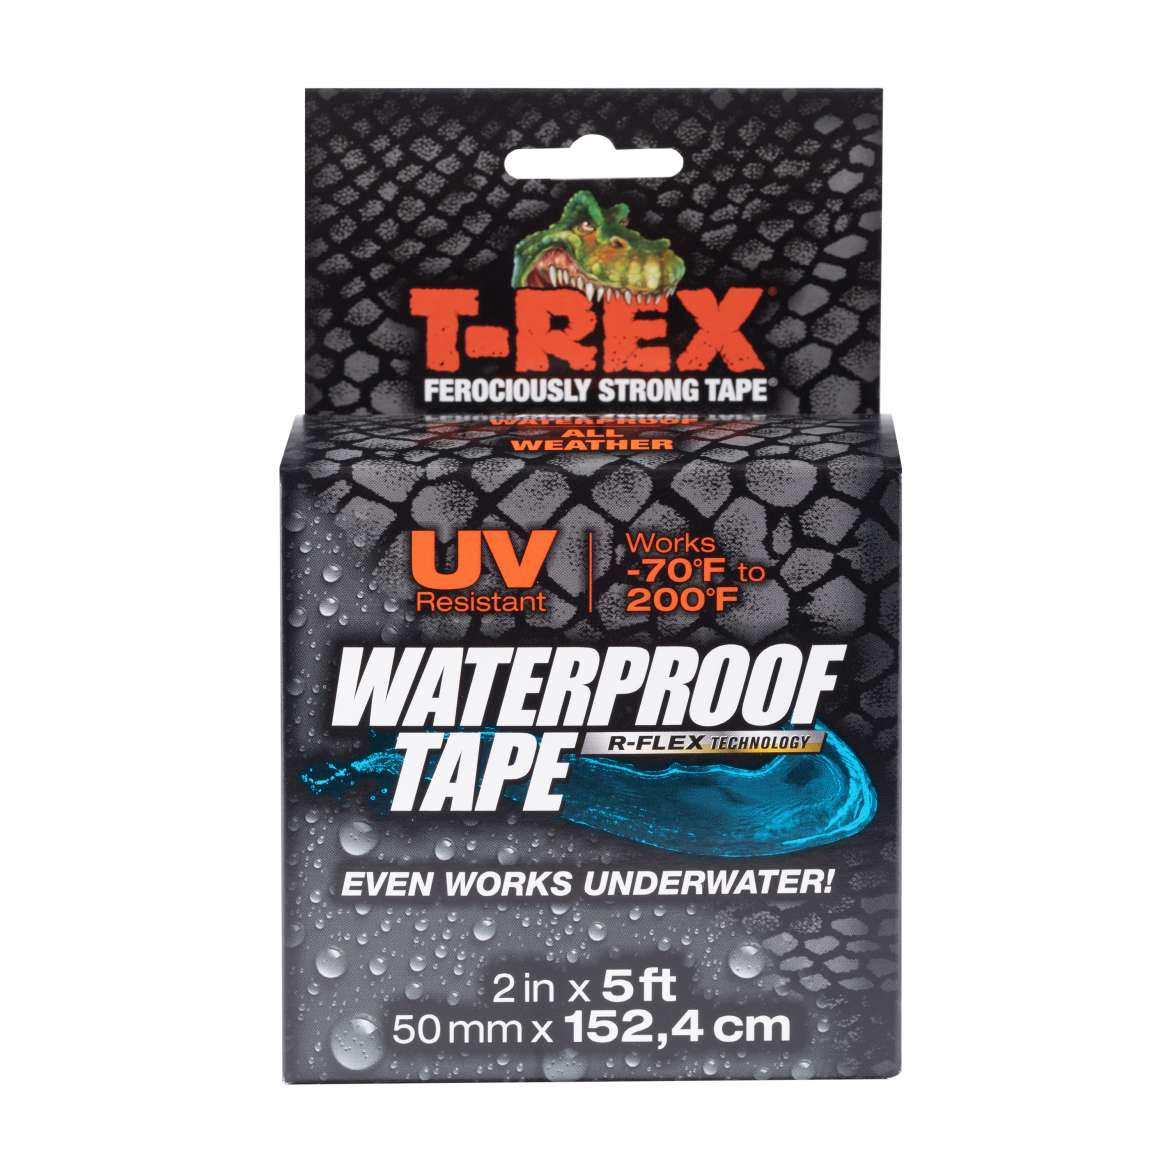 Trex waterproof tape front on